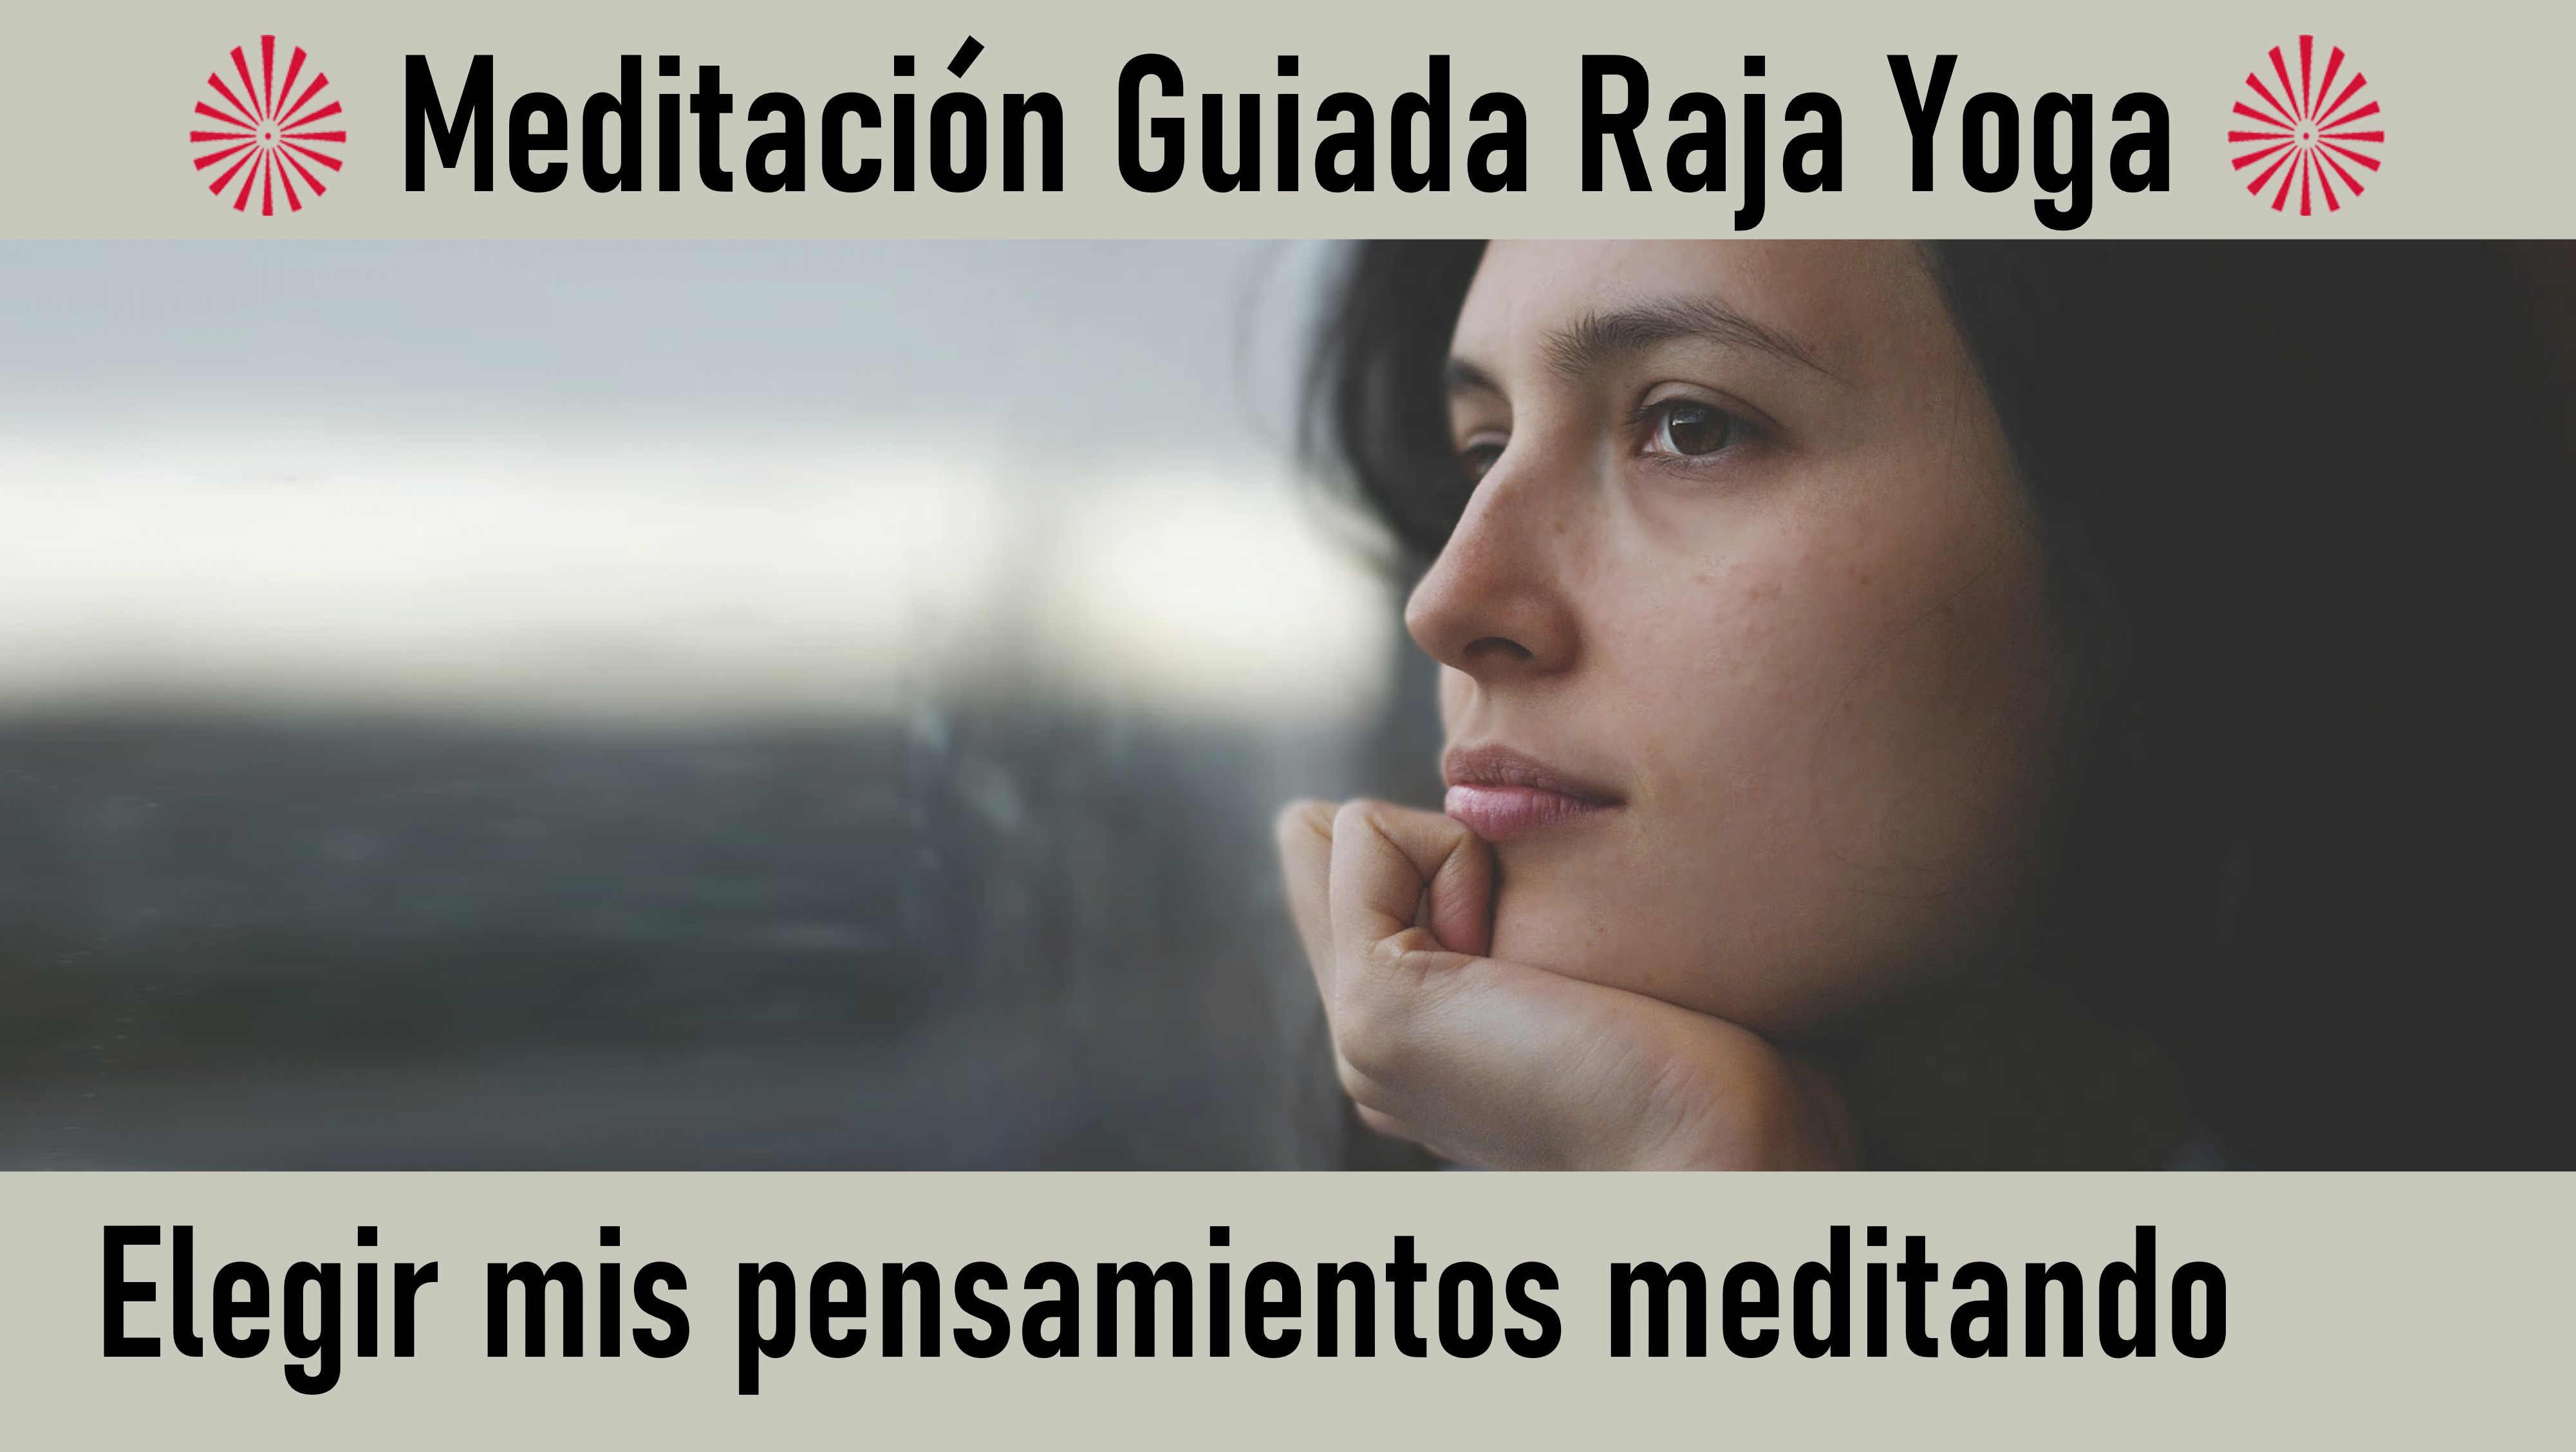 Meditación Raja Yoga: Elegir mis pensamientos meditando (22 Julio 2020) On-line desde Sevilla